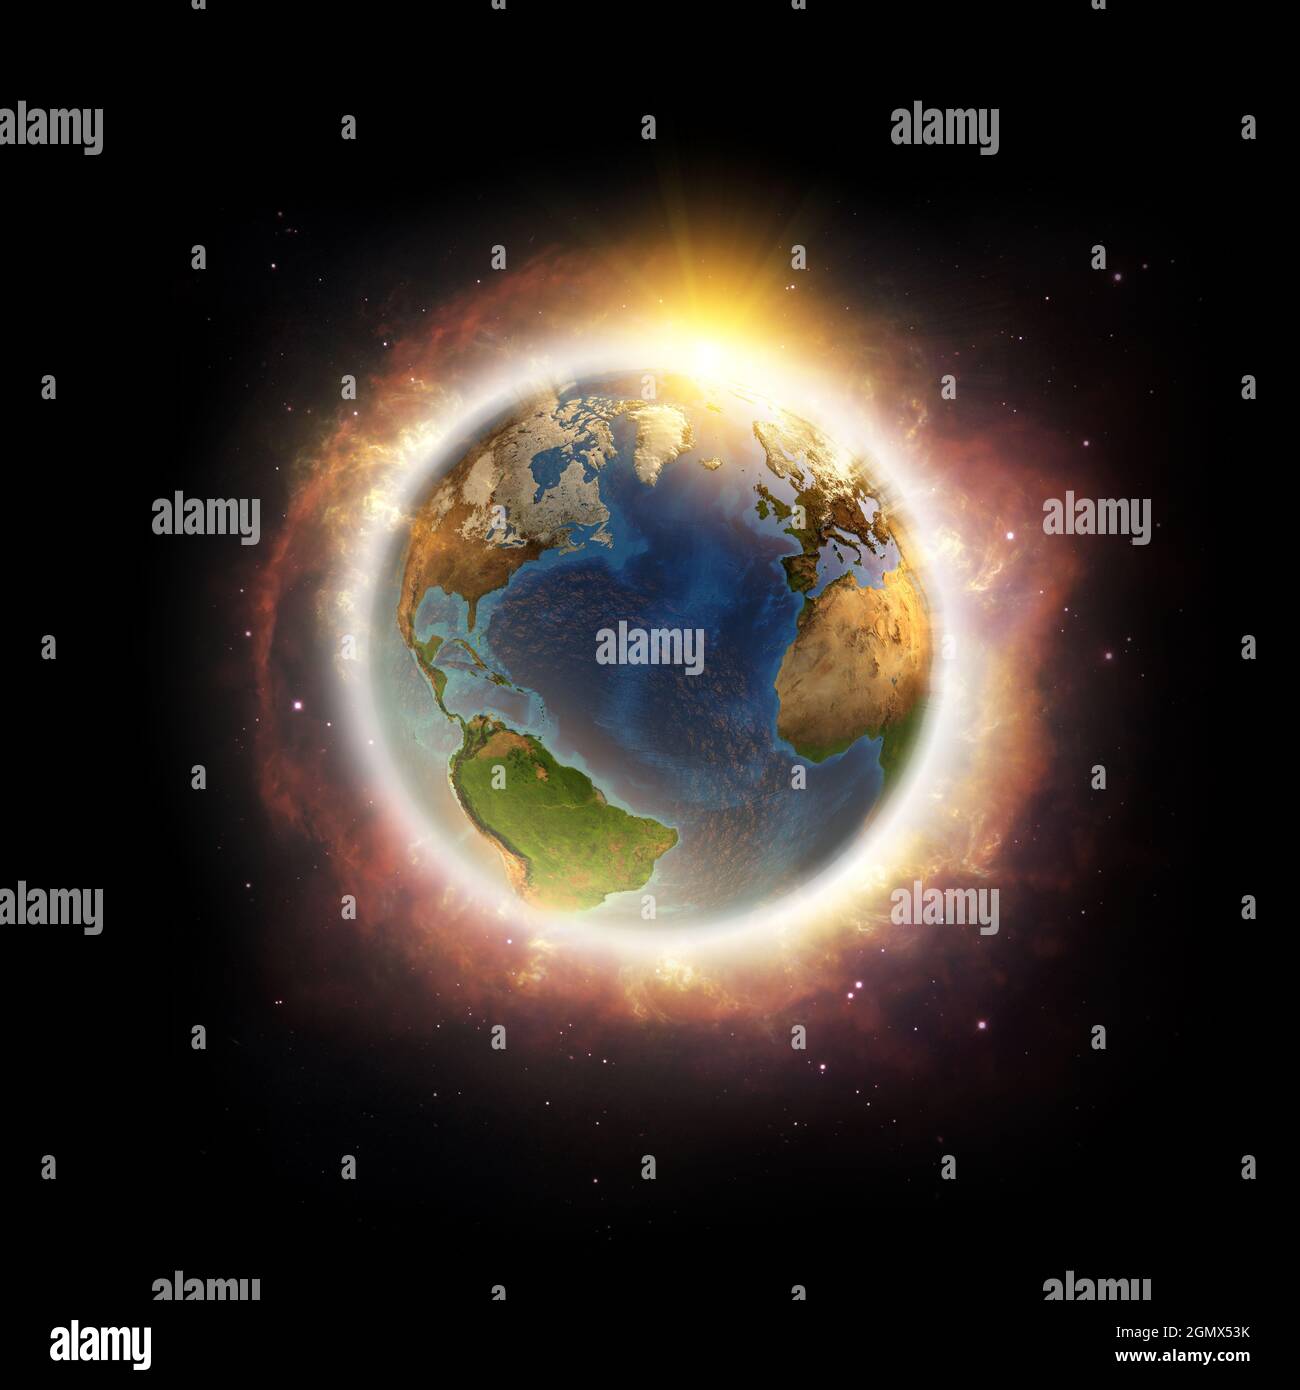 Globale Erwärmung, Klimawandel, weltweite Katastrophe auf dem Planeten Erde. 3D-Illustration - Elemente dieses Bildes, die von der NASA eingerichtet wurden. Stockfoto